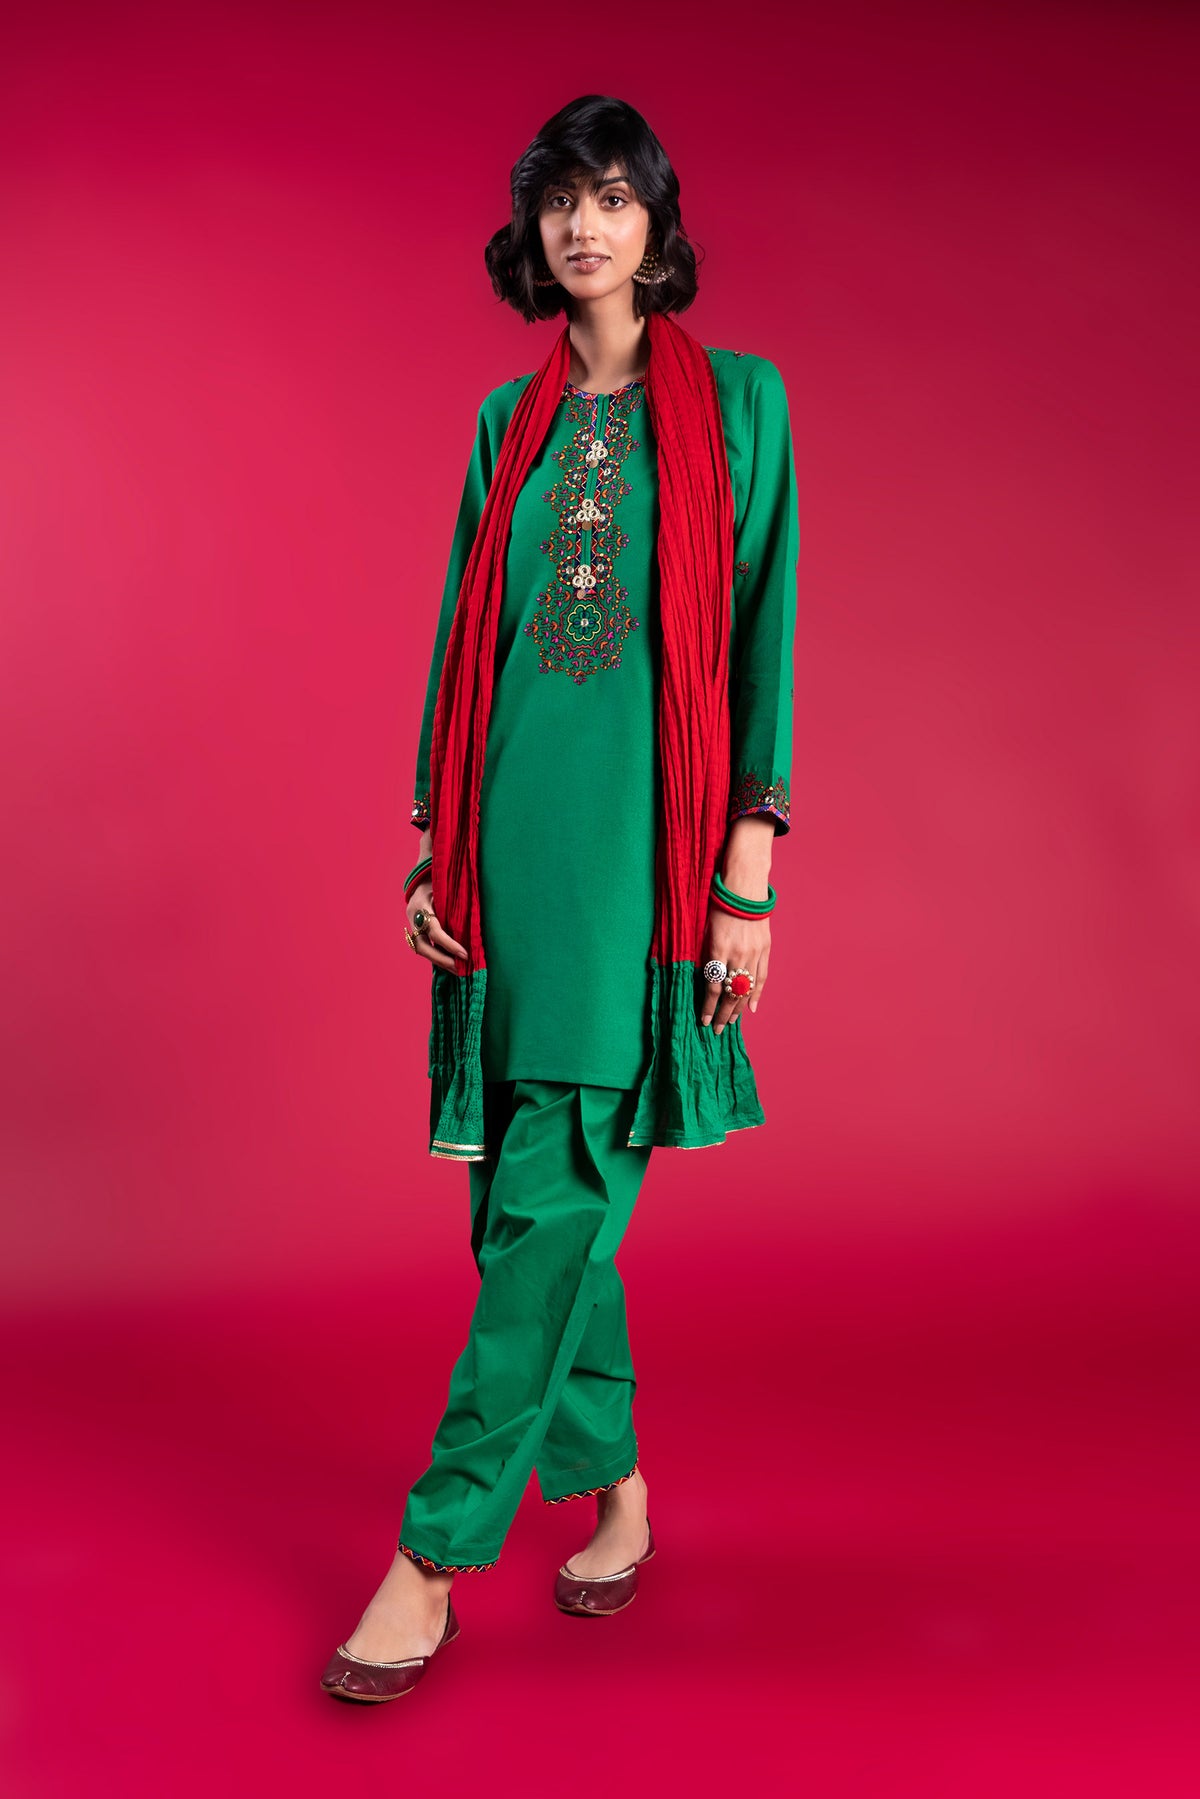 Green Phool 3 in Green coloured Lawn Karandi fabric